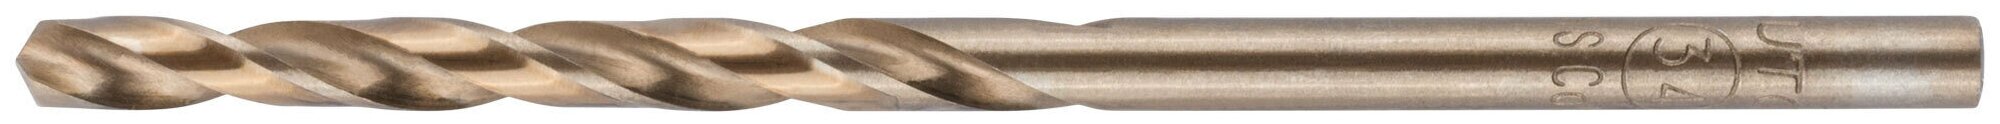 Сверло по металлу Cutop Profi с кобальтом 5% 3,4 x 70 мм, 2 шт. 48-366